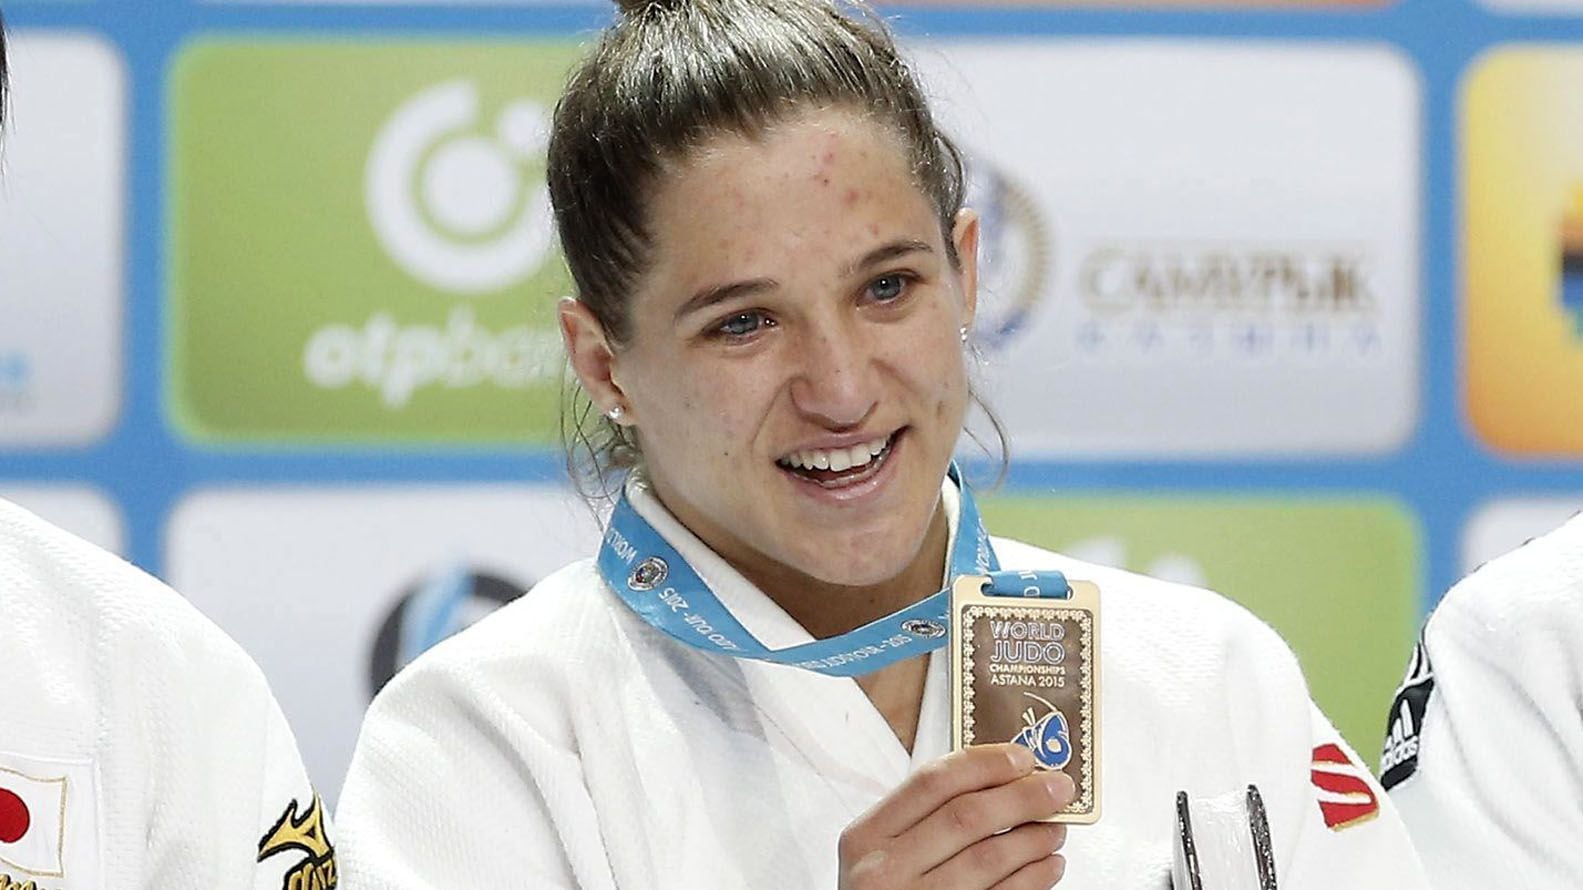 La gigante Paula Pareto, medalla de oro en judo y gran representante del deporte argentino